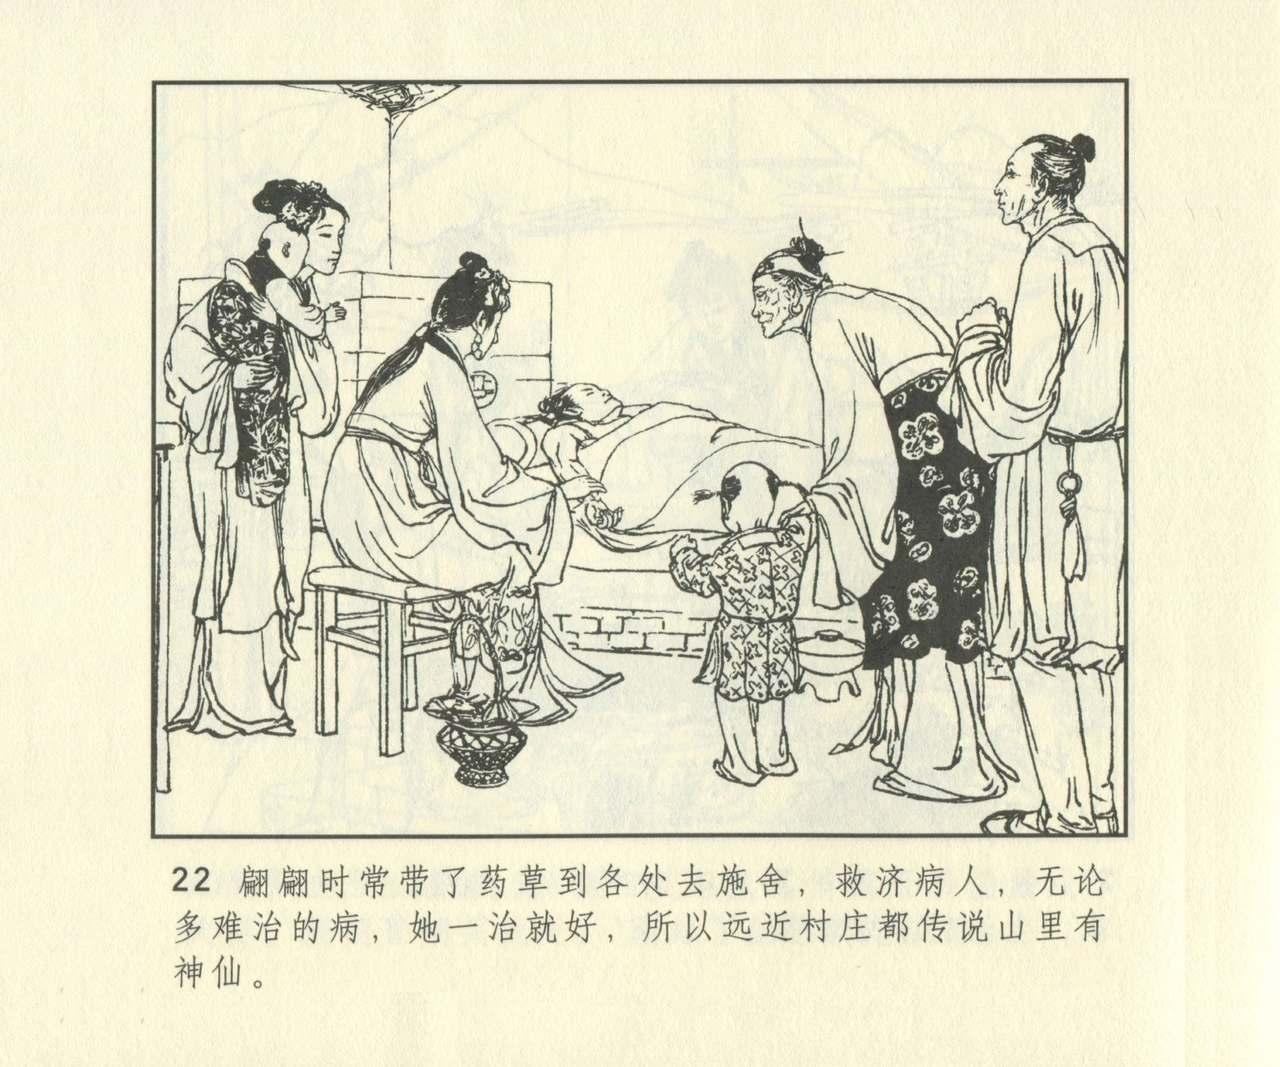 聊斋志异 张玮等绘 天津人民美术出版社 卷二十一 ~ 三十 638